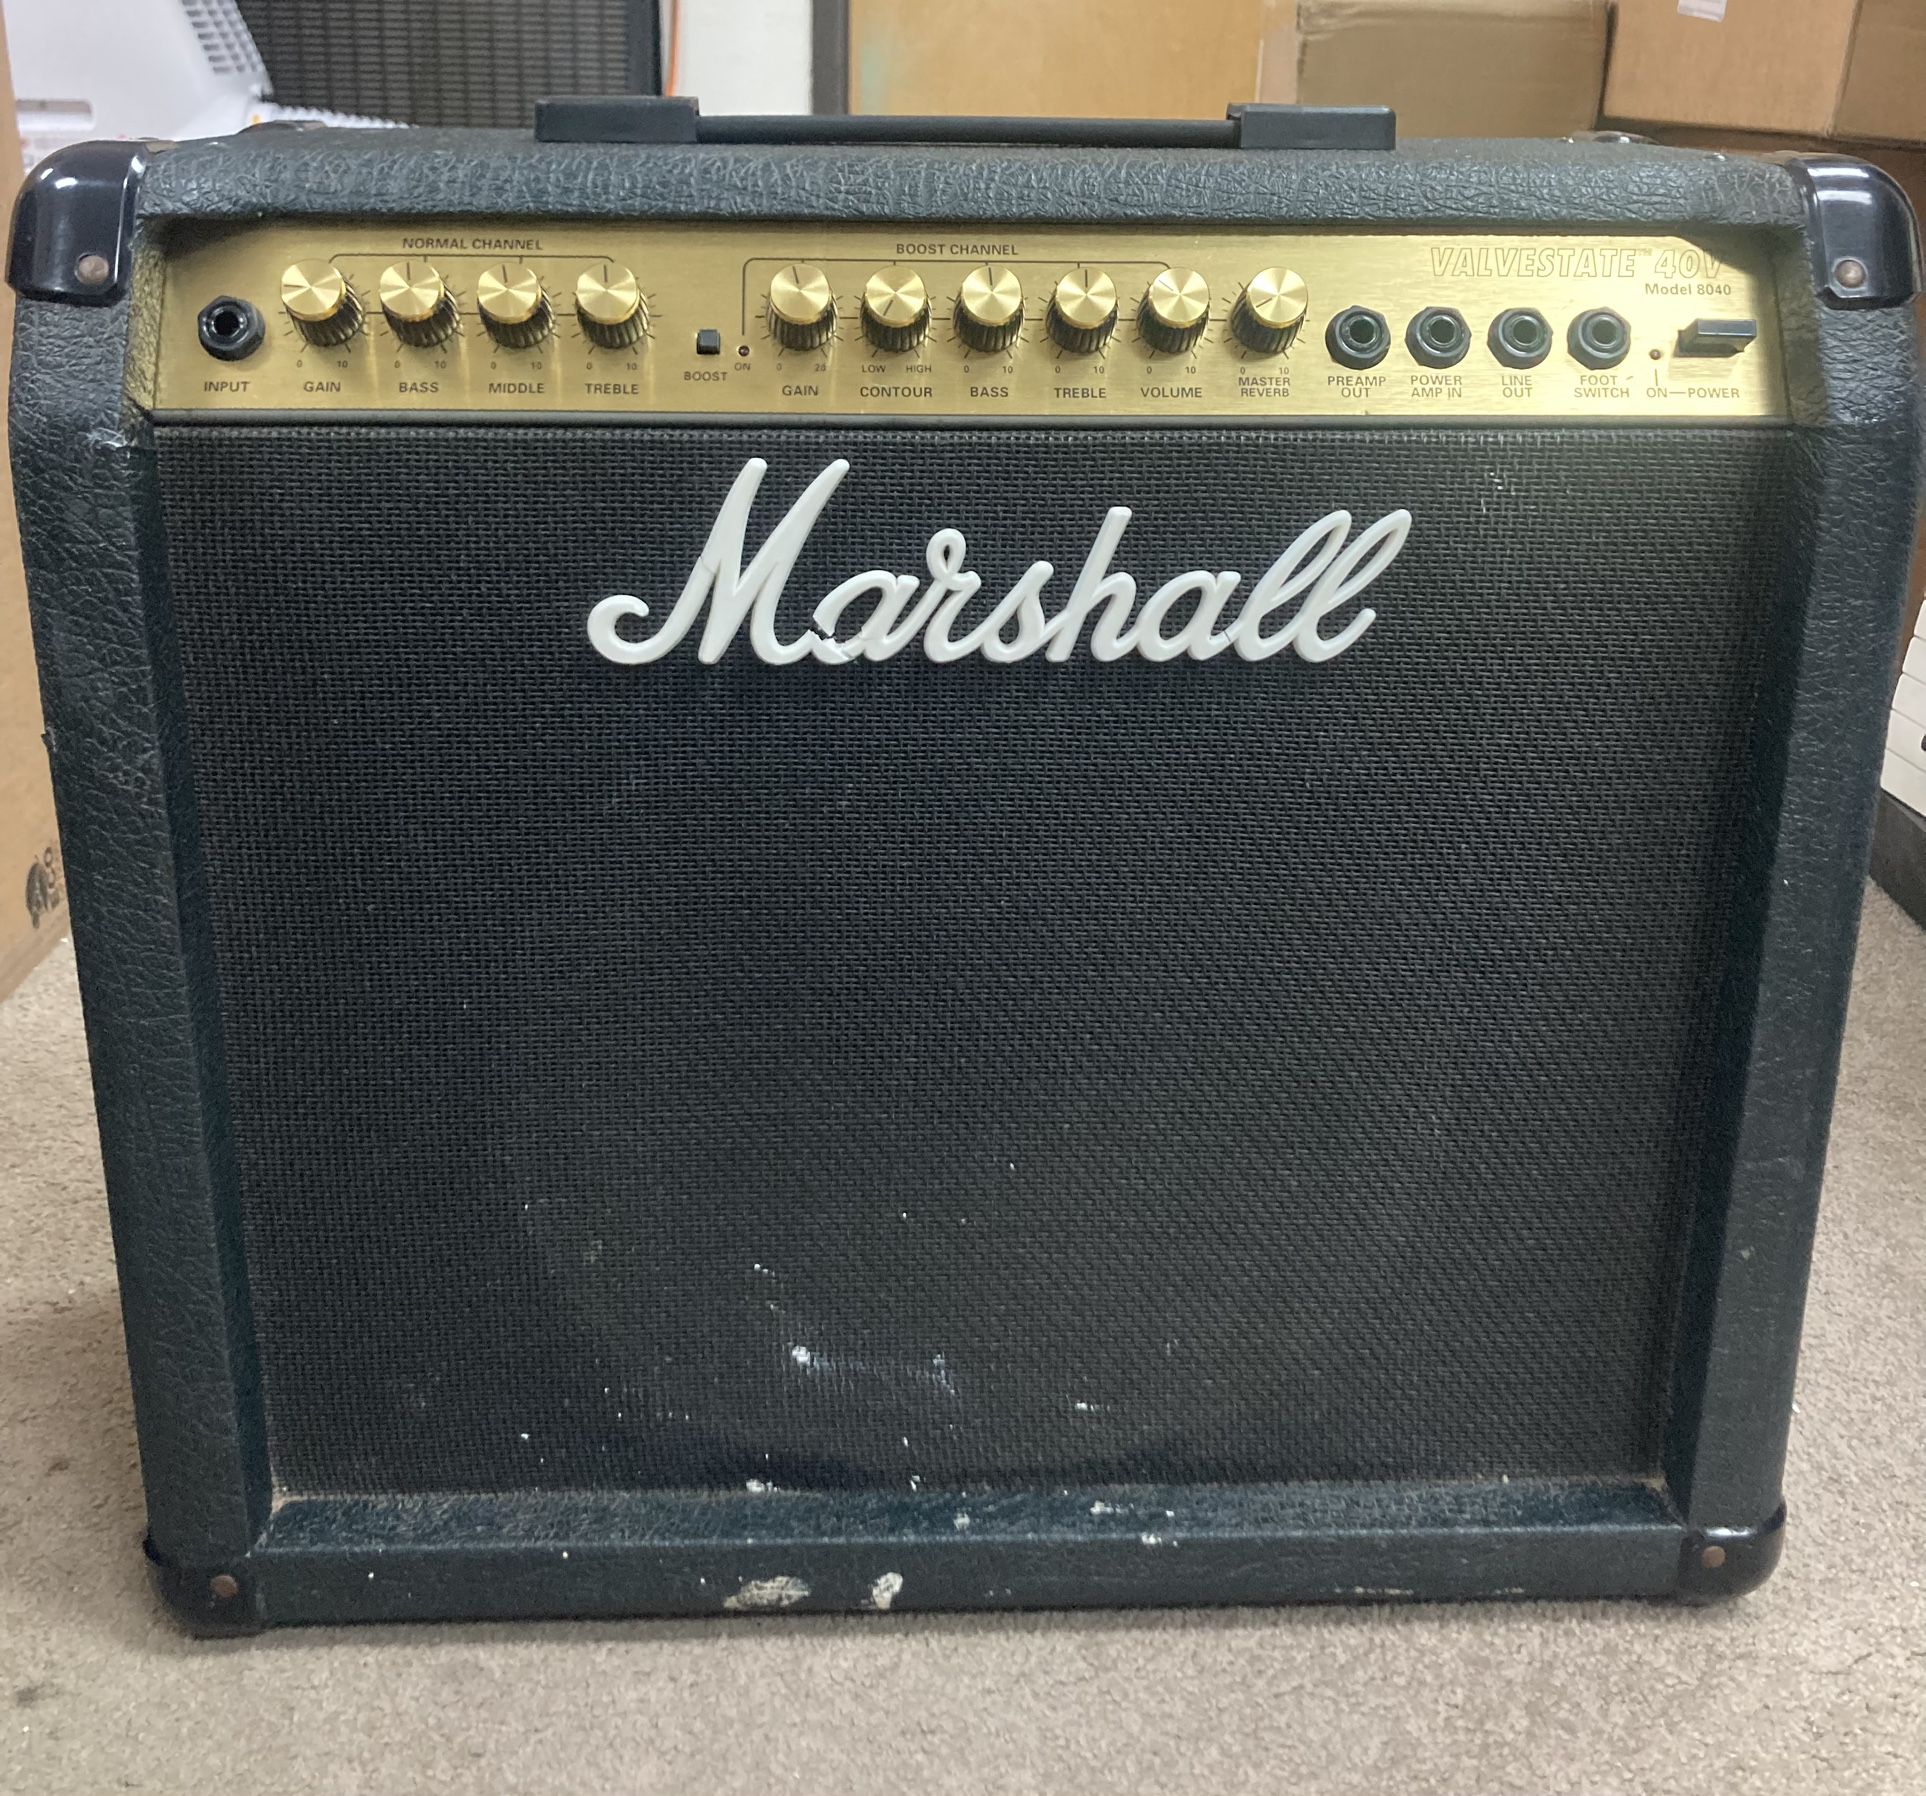 Marshall Valvestate 8040 Guitar Amp